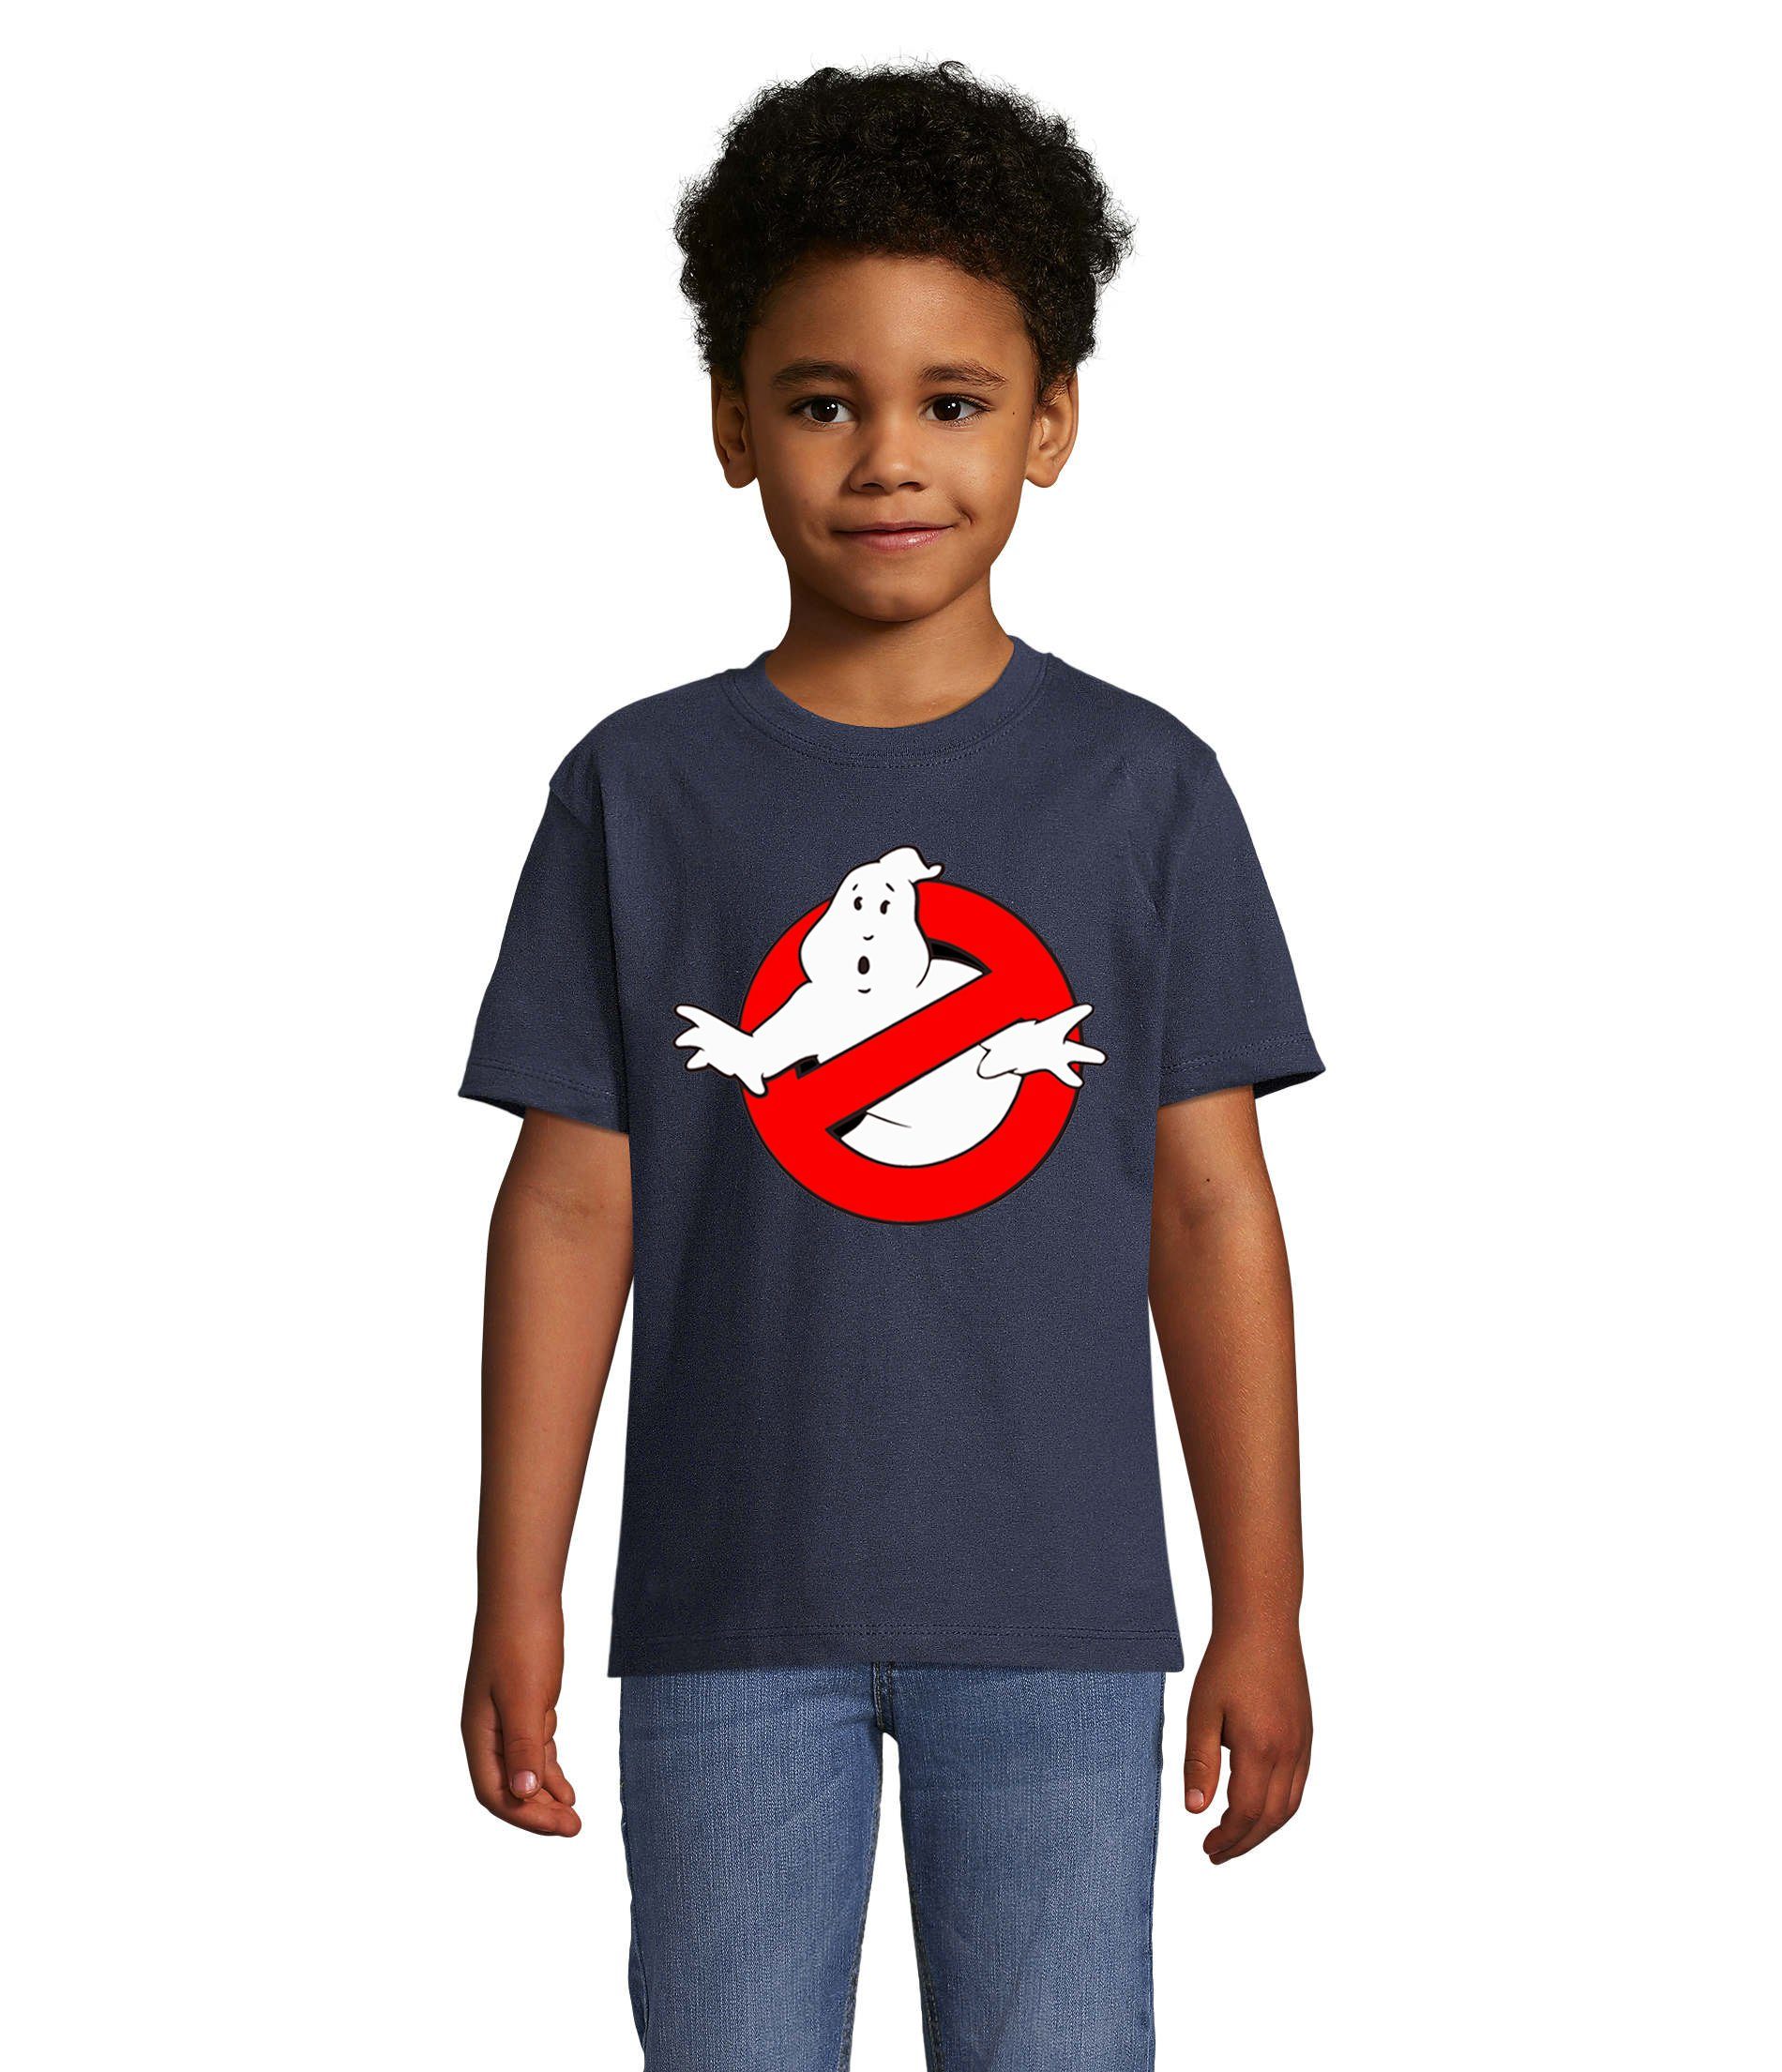 Blondie & Brownie Ghostbusters Farben vielen Navyblau in Kinder Mädchen Jungen Geisterjäger T-Shirt & Geister Ghost